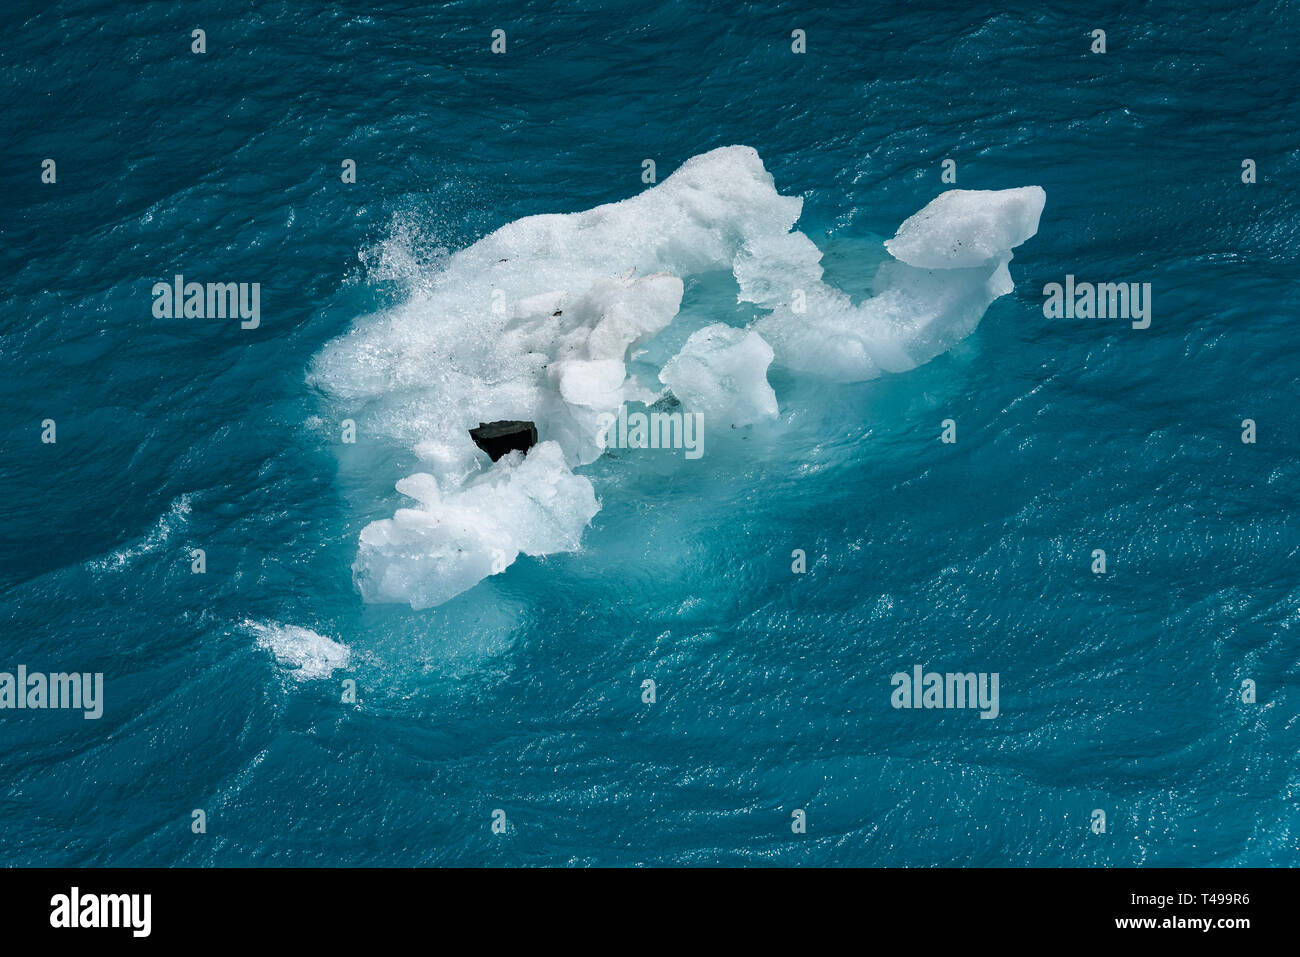 Schönen Meer aquamarinen und Blues mit einem kleinen schwimmenden Eisberg mit einem Rock, als Natur Hintergrund Stockfoto